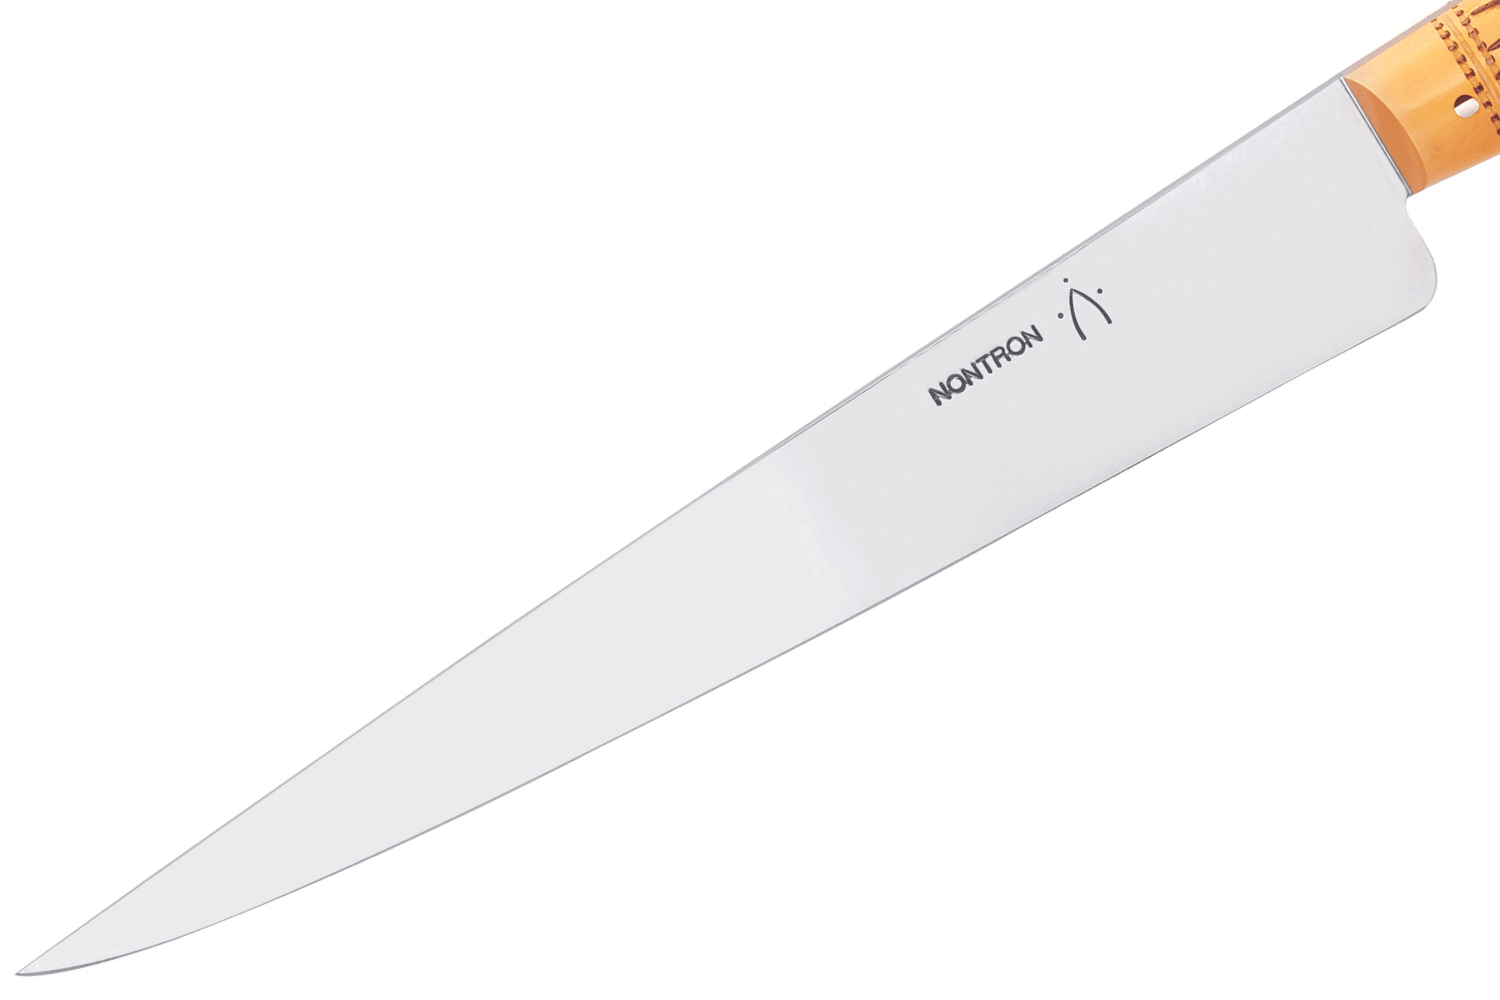 Nontron 87600 - Boite de 6 couteaux de table/office